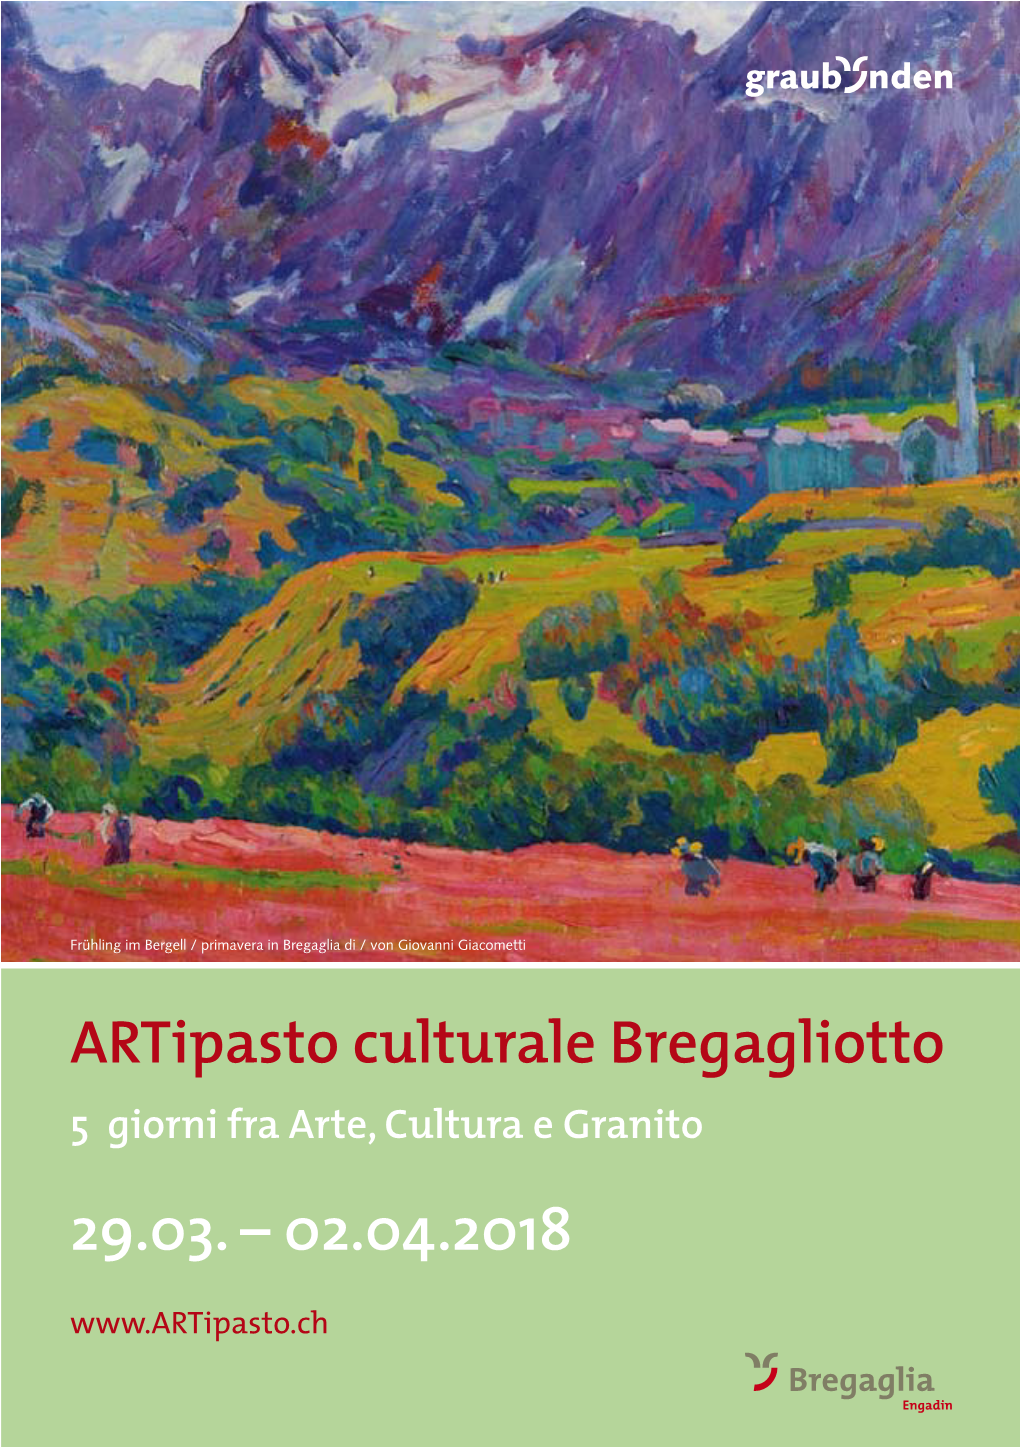 Artipasto Culturale Bregagliotto 5 Giorni Fra Arte, Cultura E Granito 29.03